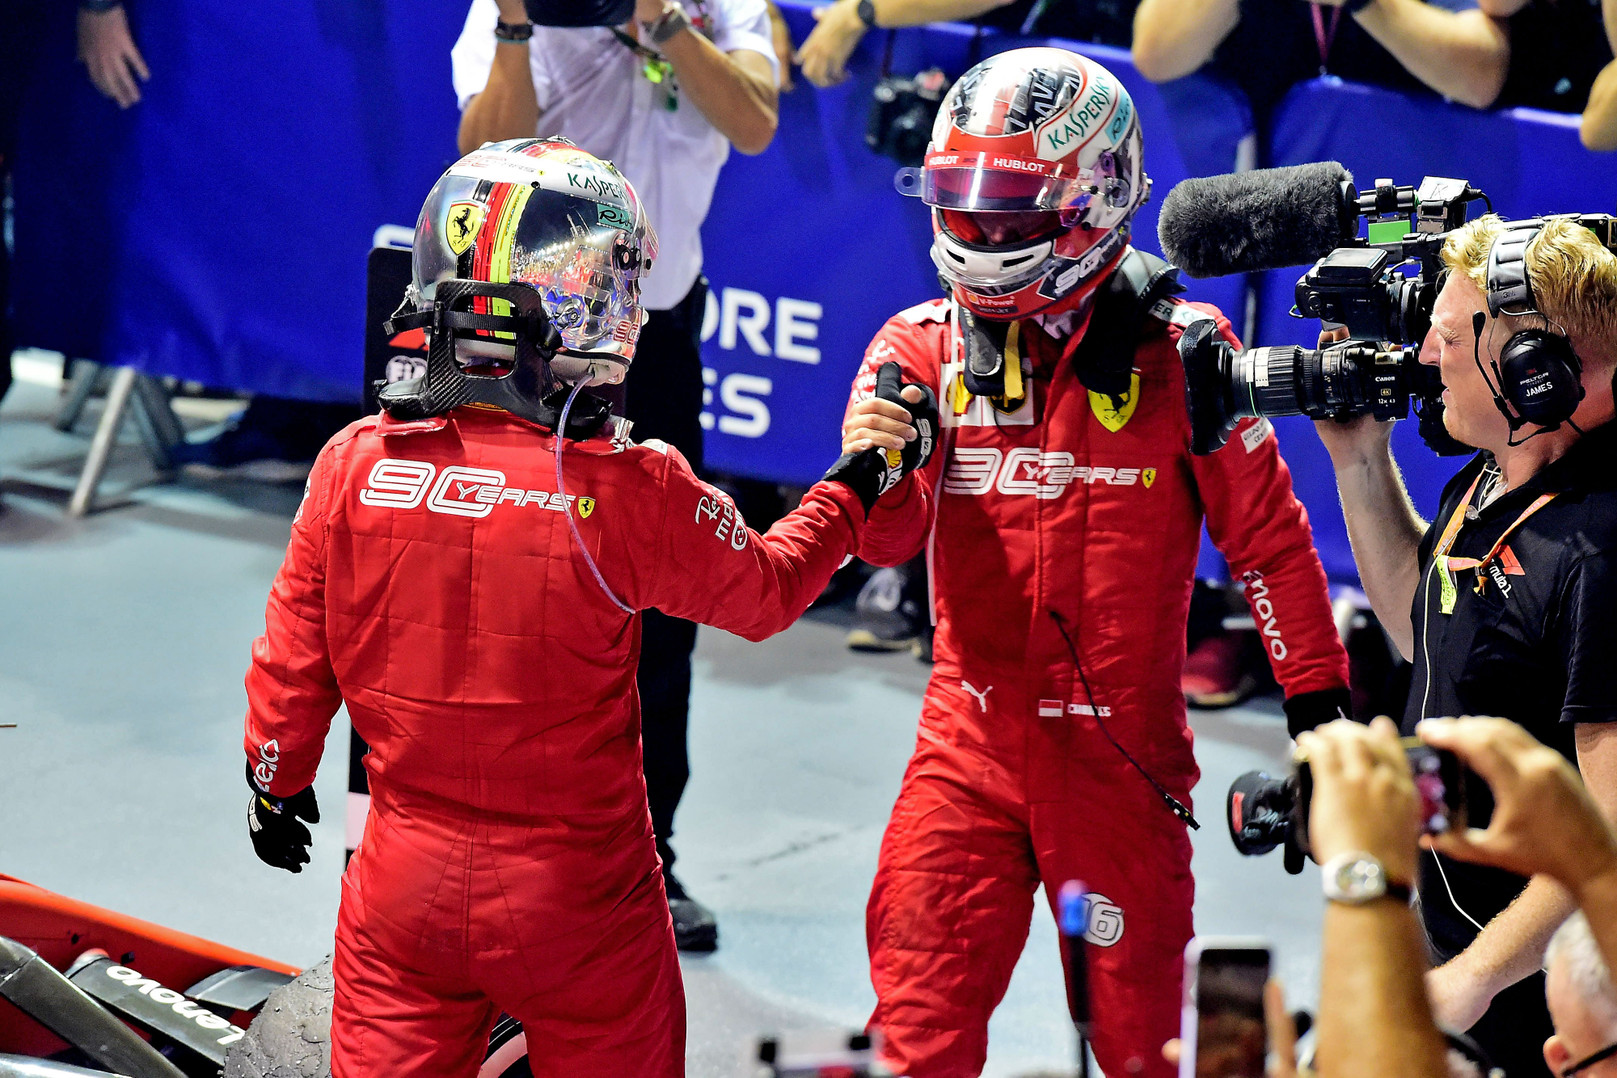 S. Vettelis: suprantu kodėl C. Leclercas buvo nepatenkintas